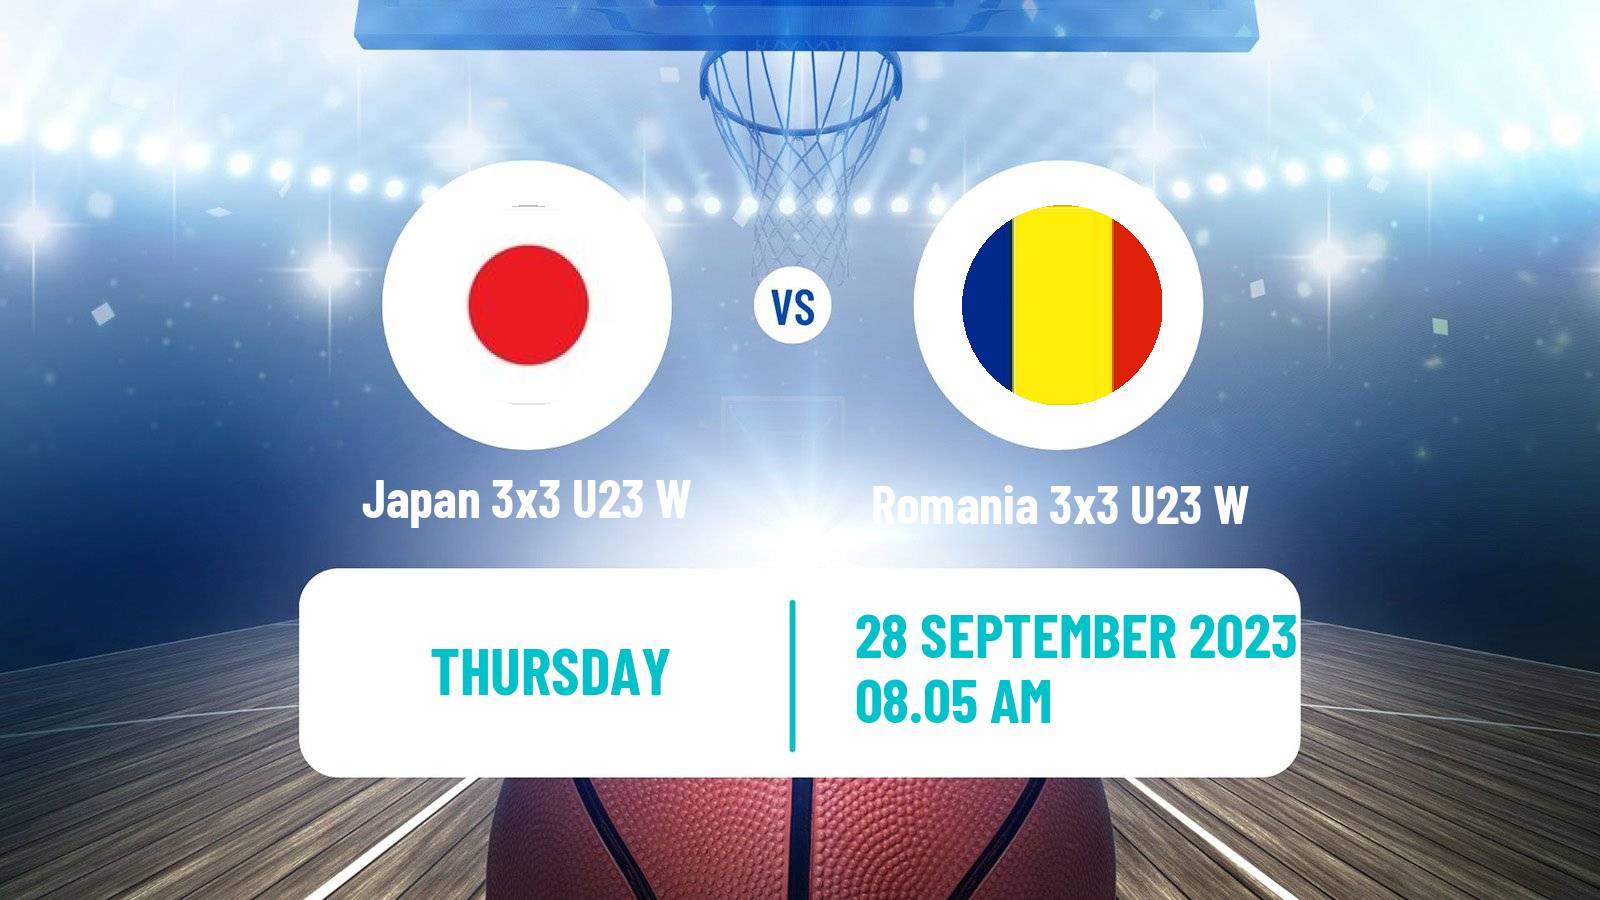 Basketball World Cup Basketball 3x3 U23 Women Japan 3x3 U23 W - Romania 3x3 U23 W